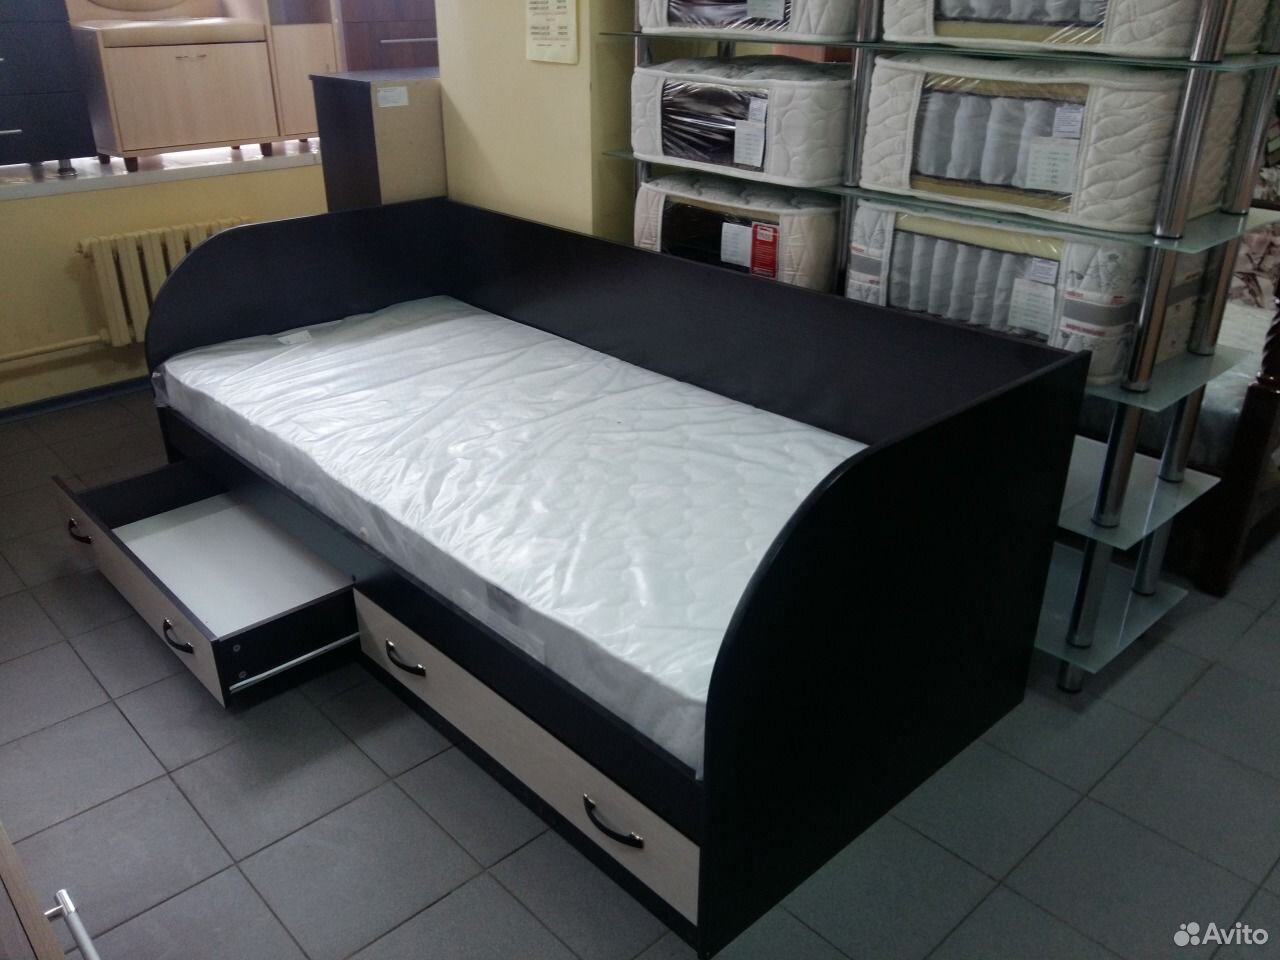 Авито на дону. Авито кровать с ящиками. Авито диван кровать. Мебель маг Новочеркасск. Диван кровать с ящиком на авито.